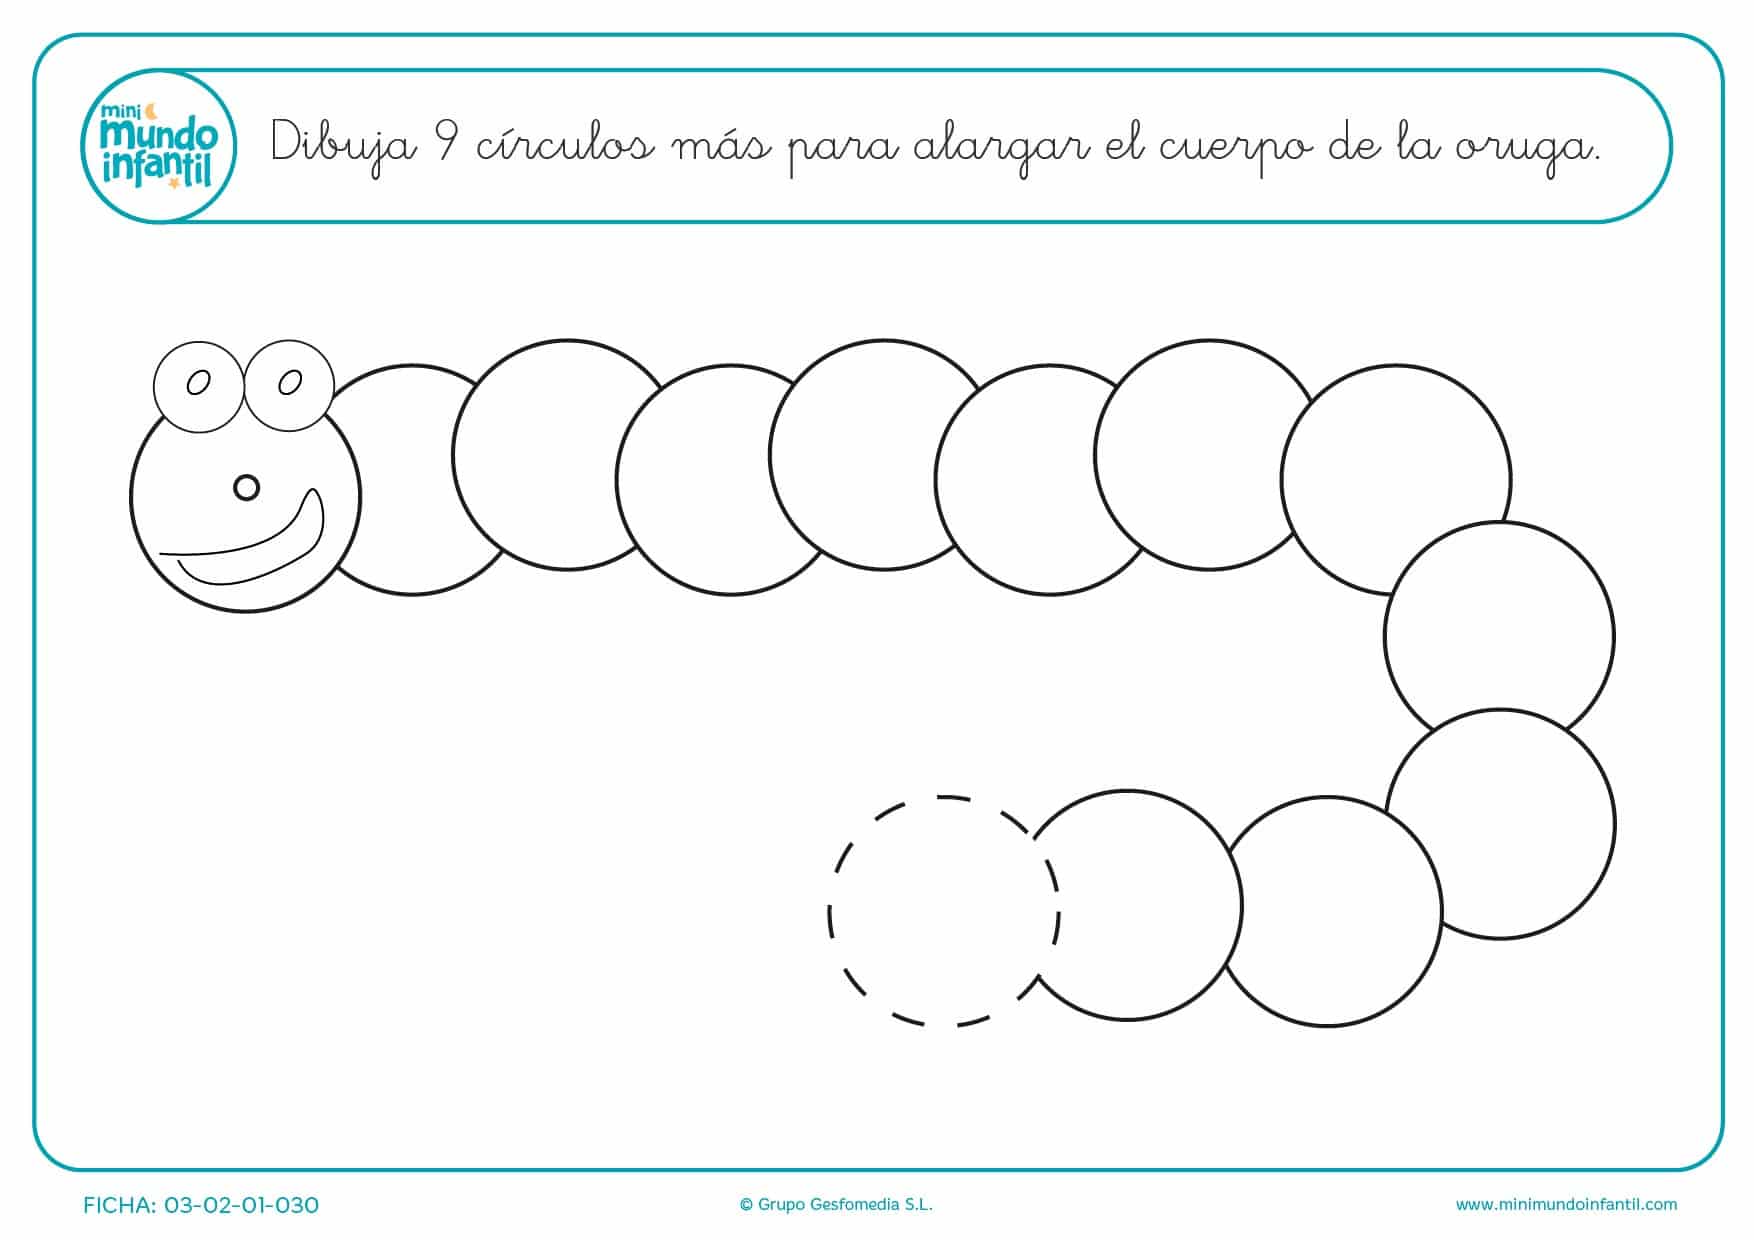 Continuar y dibujar la serie de 9 círculos